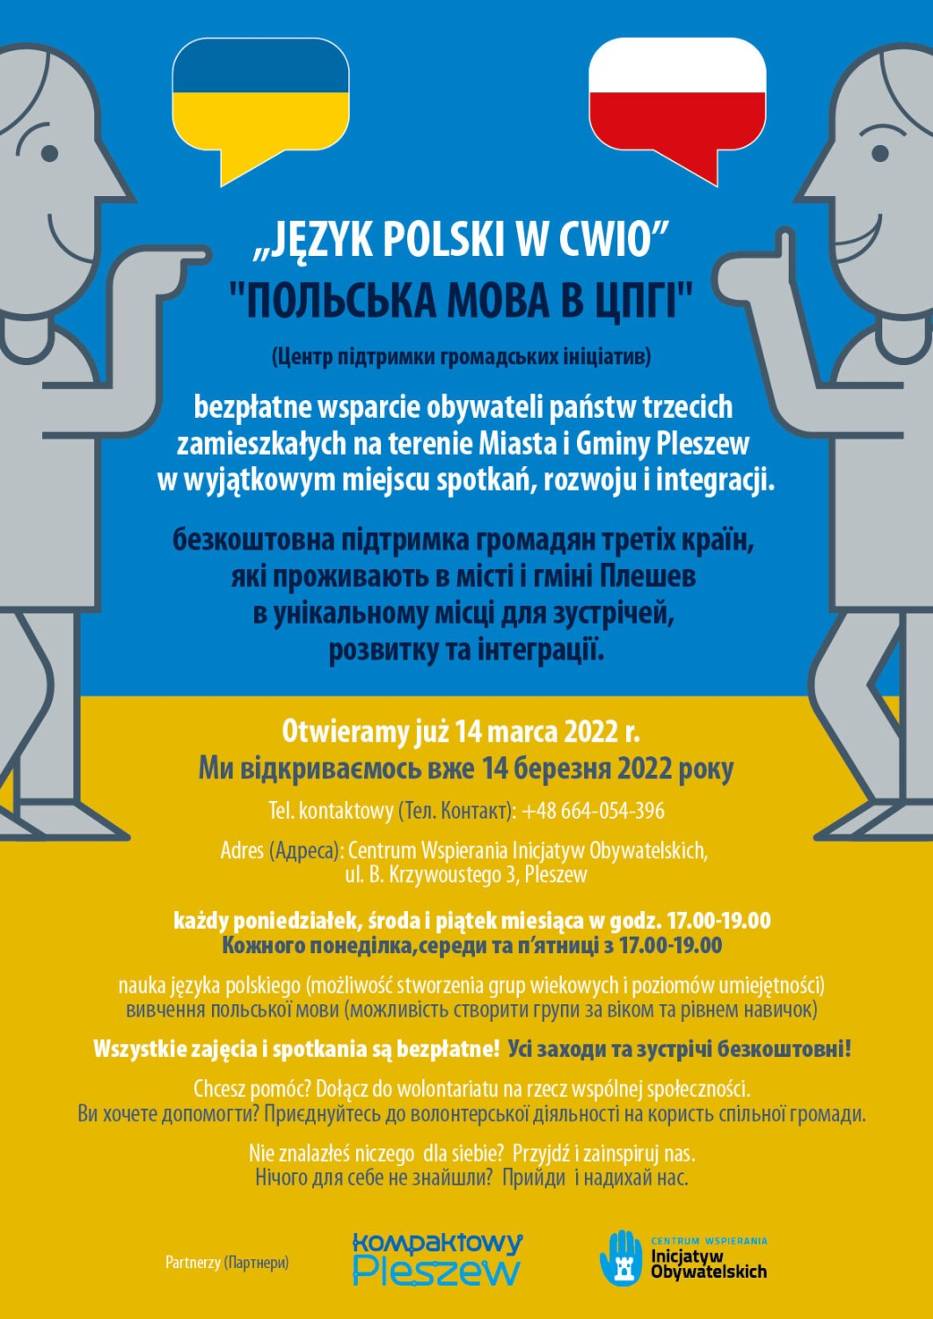 Pleszew zorganizował bezpłatne lekcje języka polskiego dla uchodźców z Ukrainy